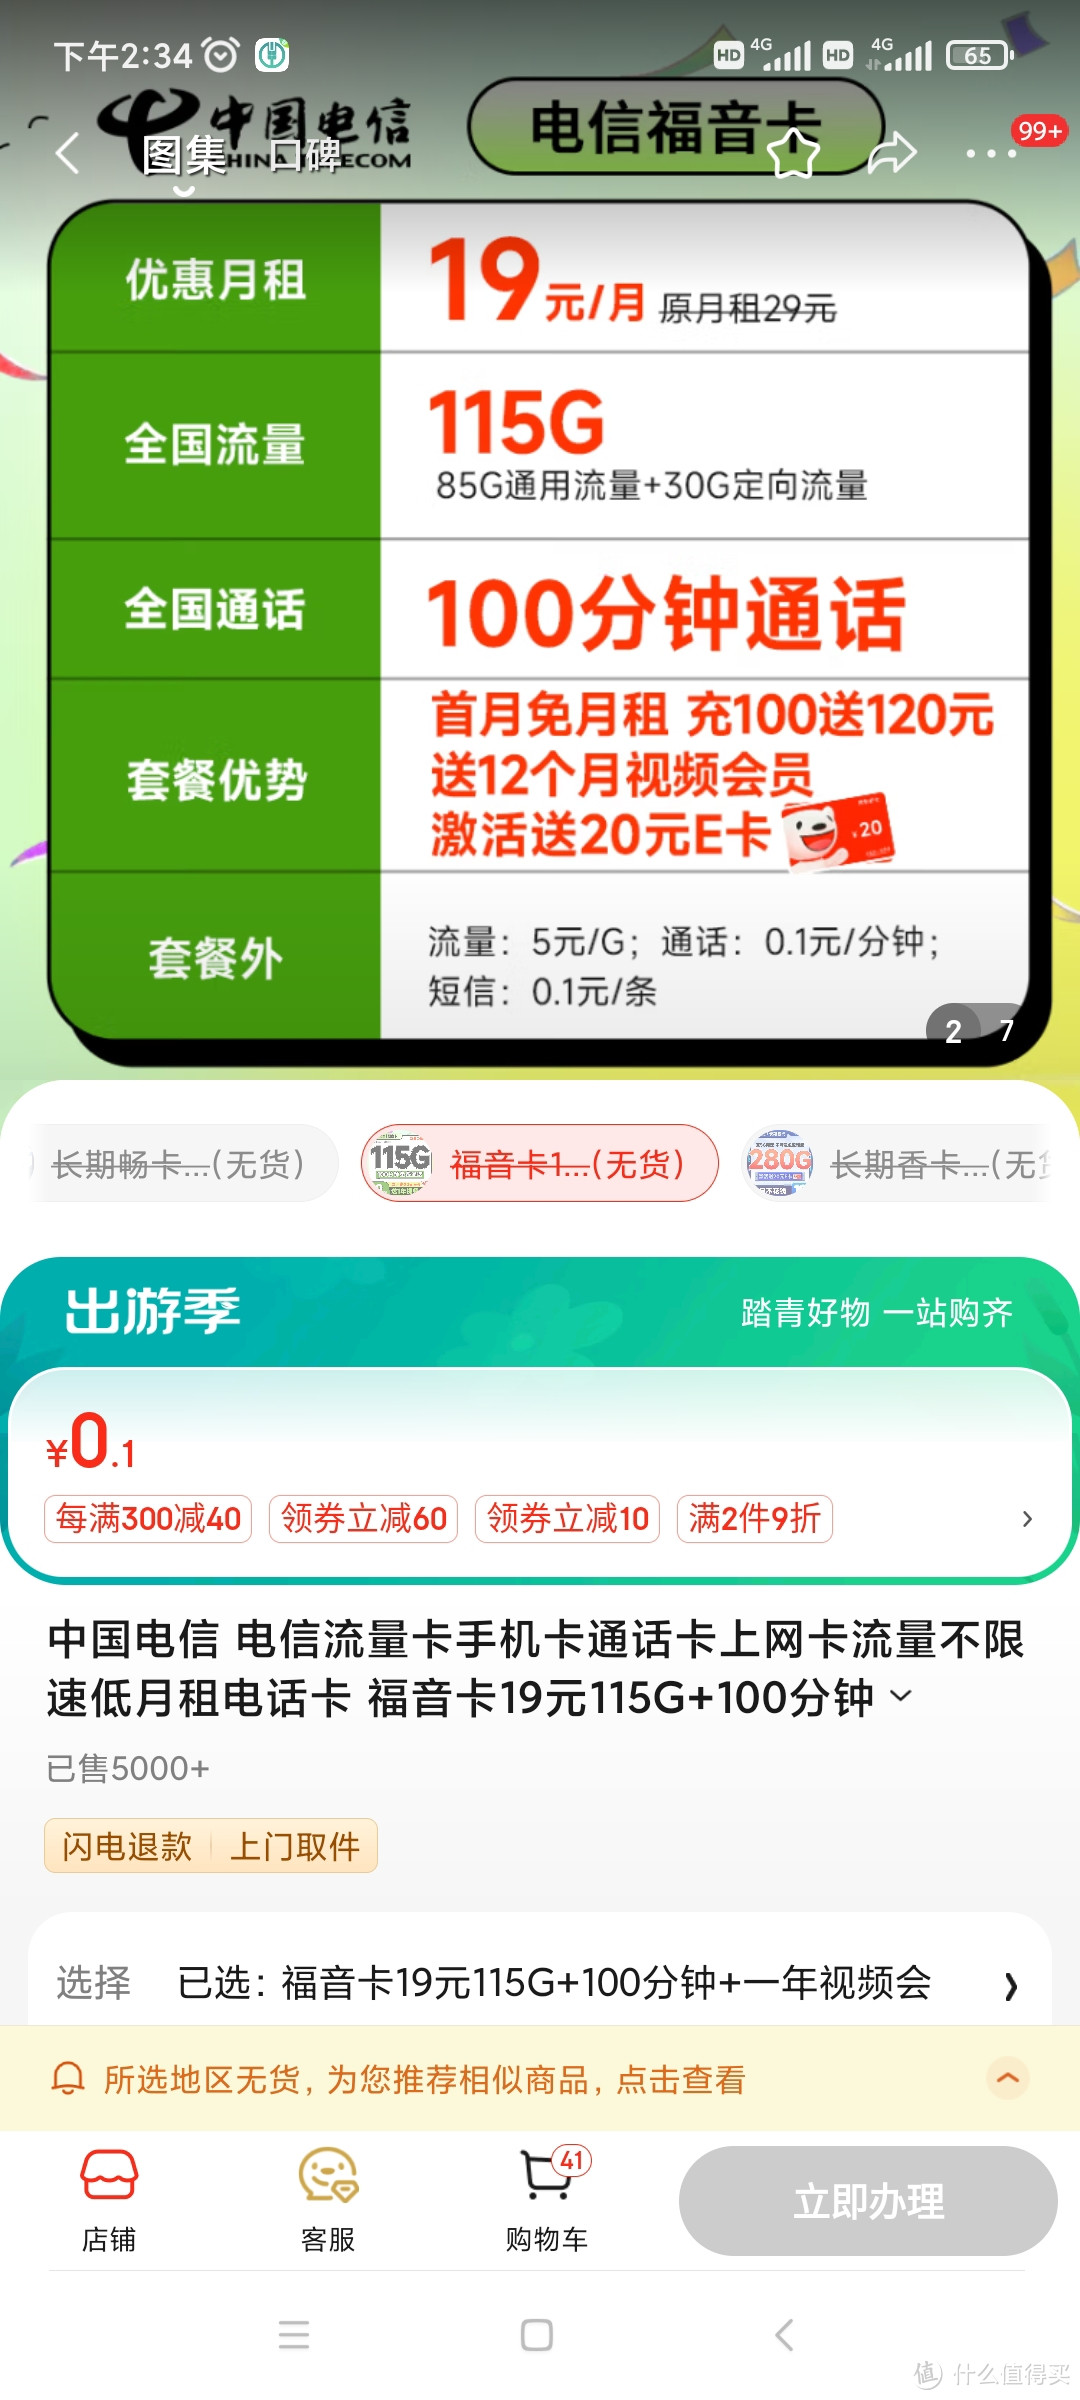 中国电信 电信流量卡手机卡通话卡上网卡流量不限速低月租电话卡 福音卡1